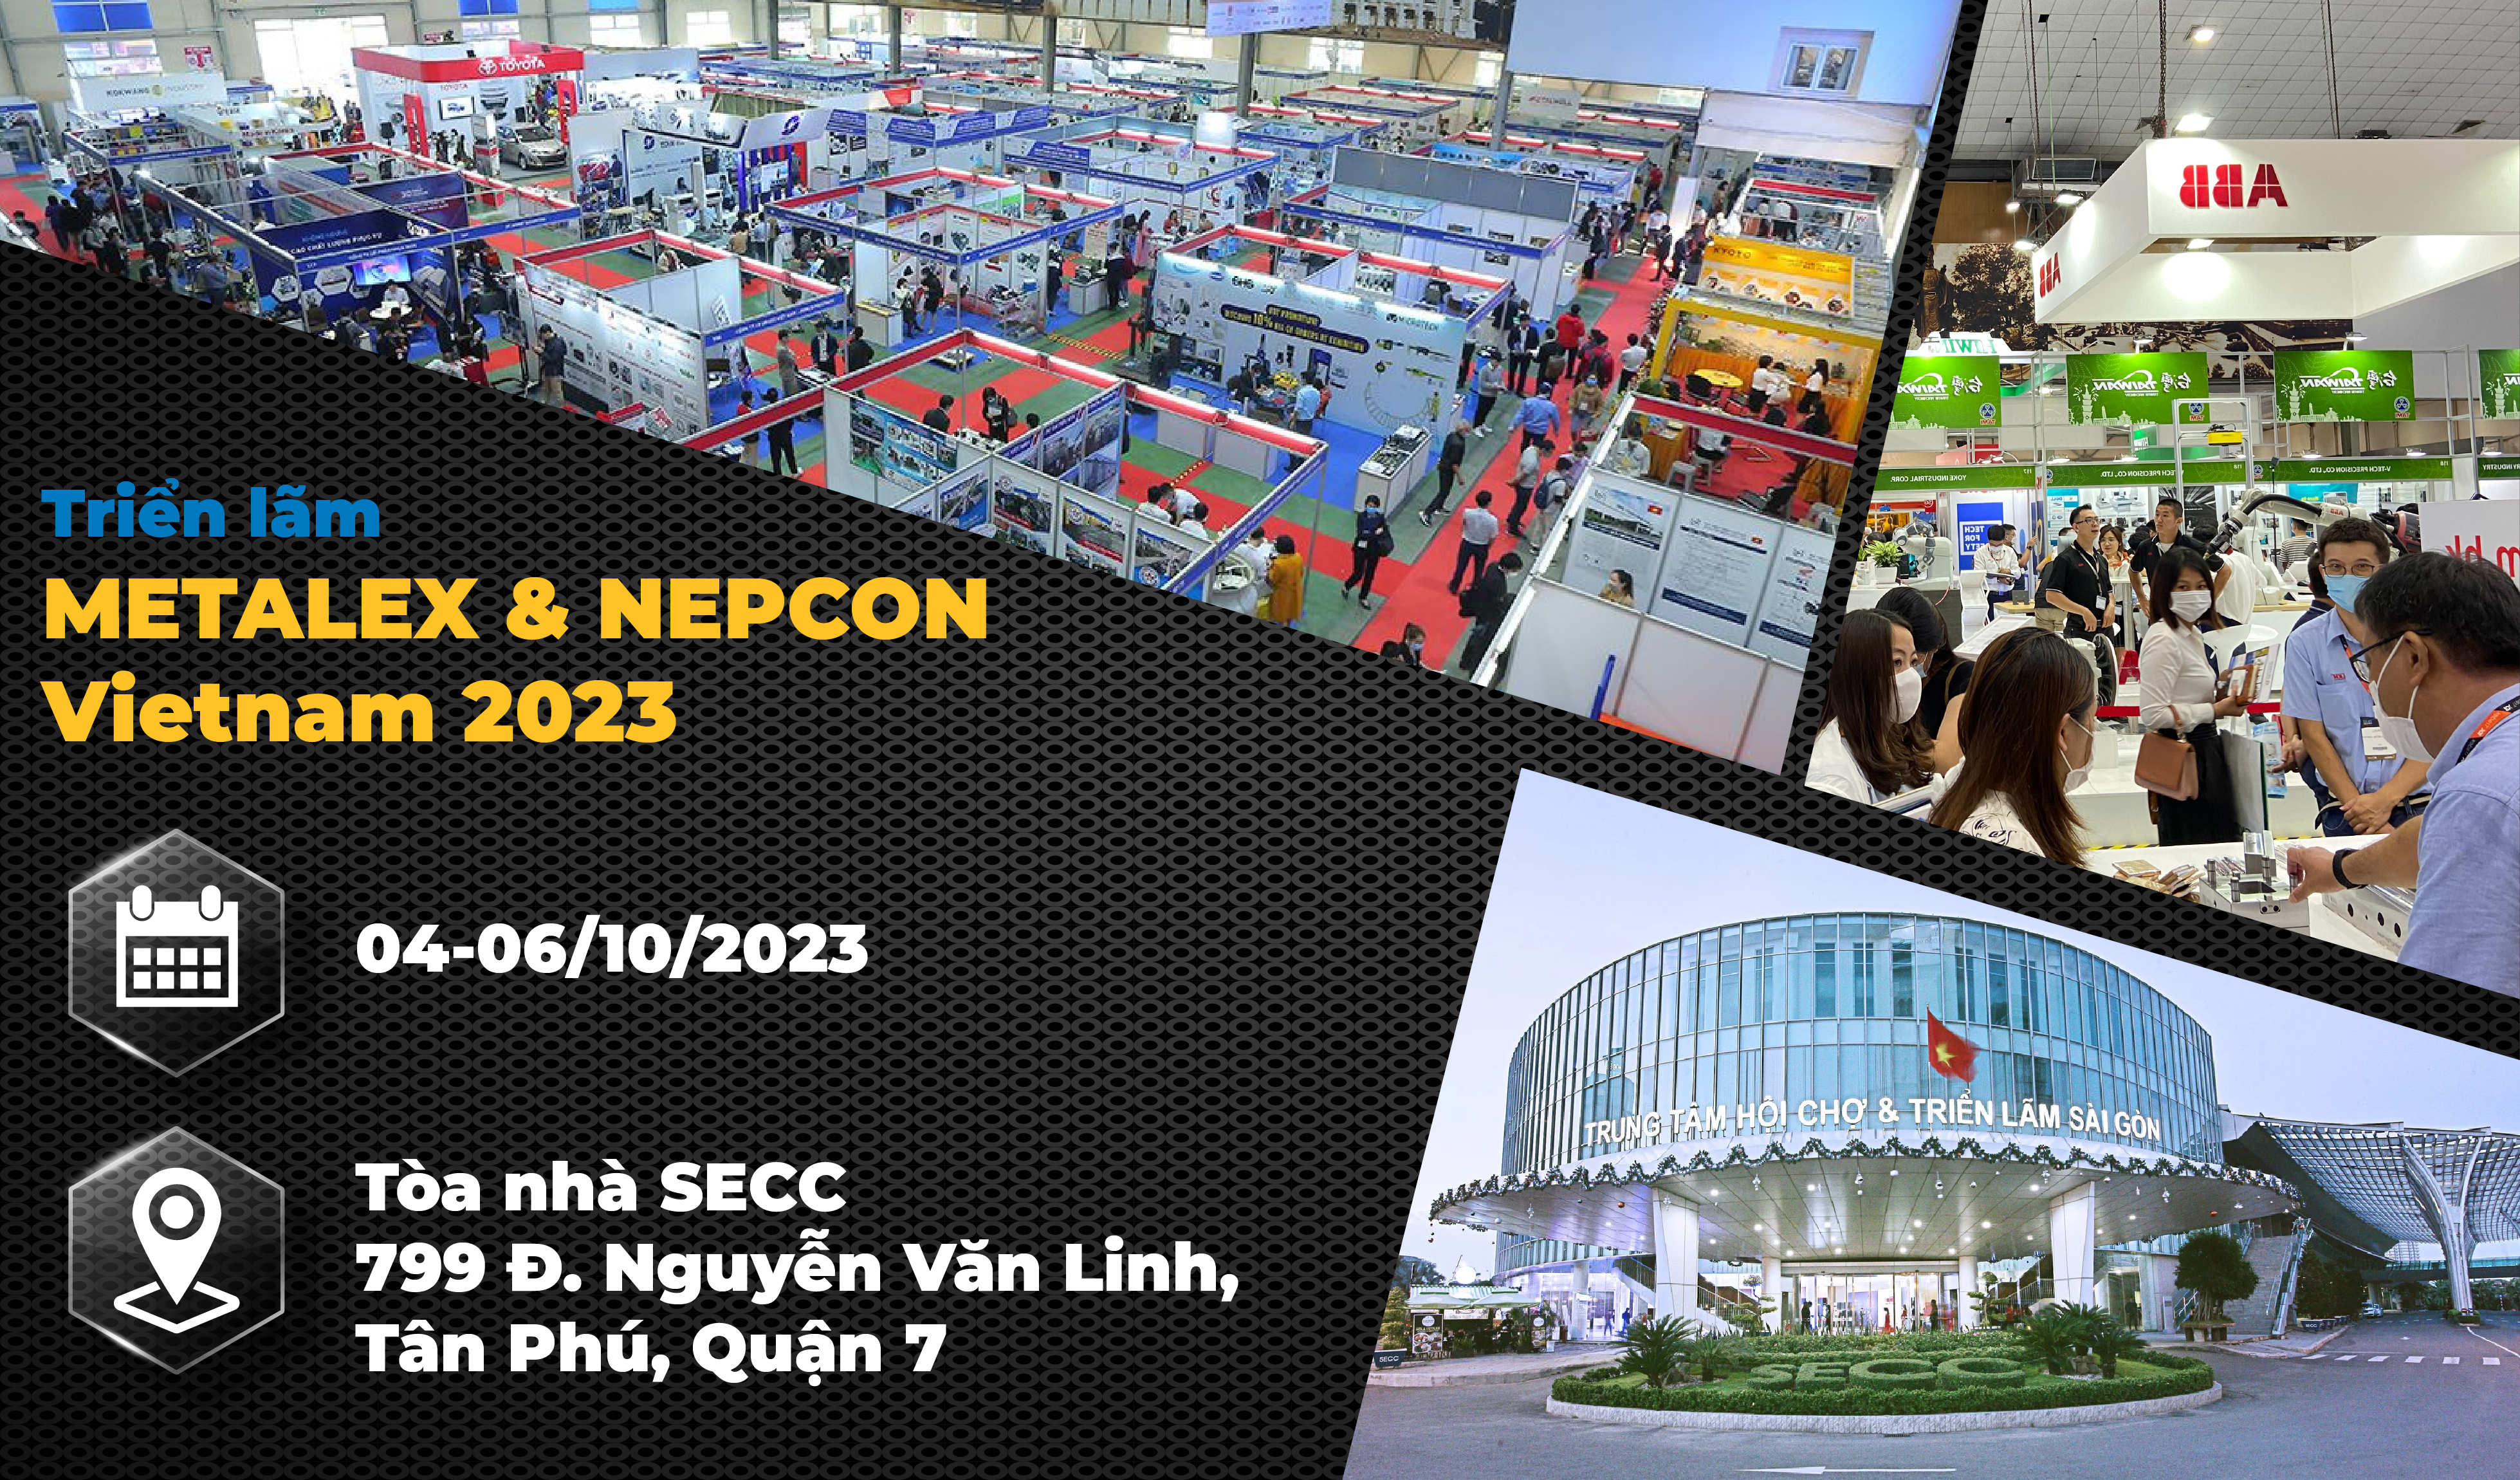 METALEX & NEPCON Vietnam 2023